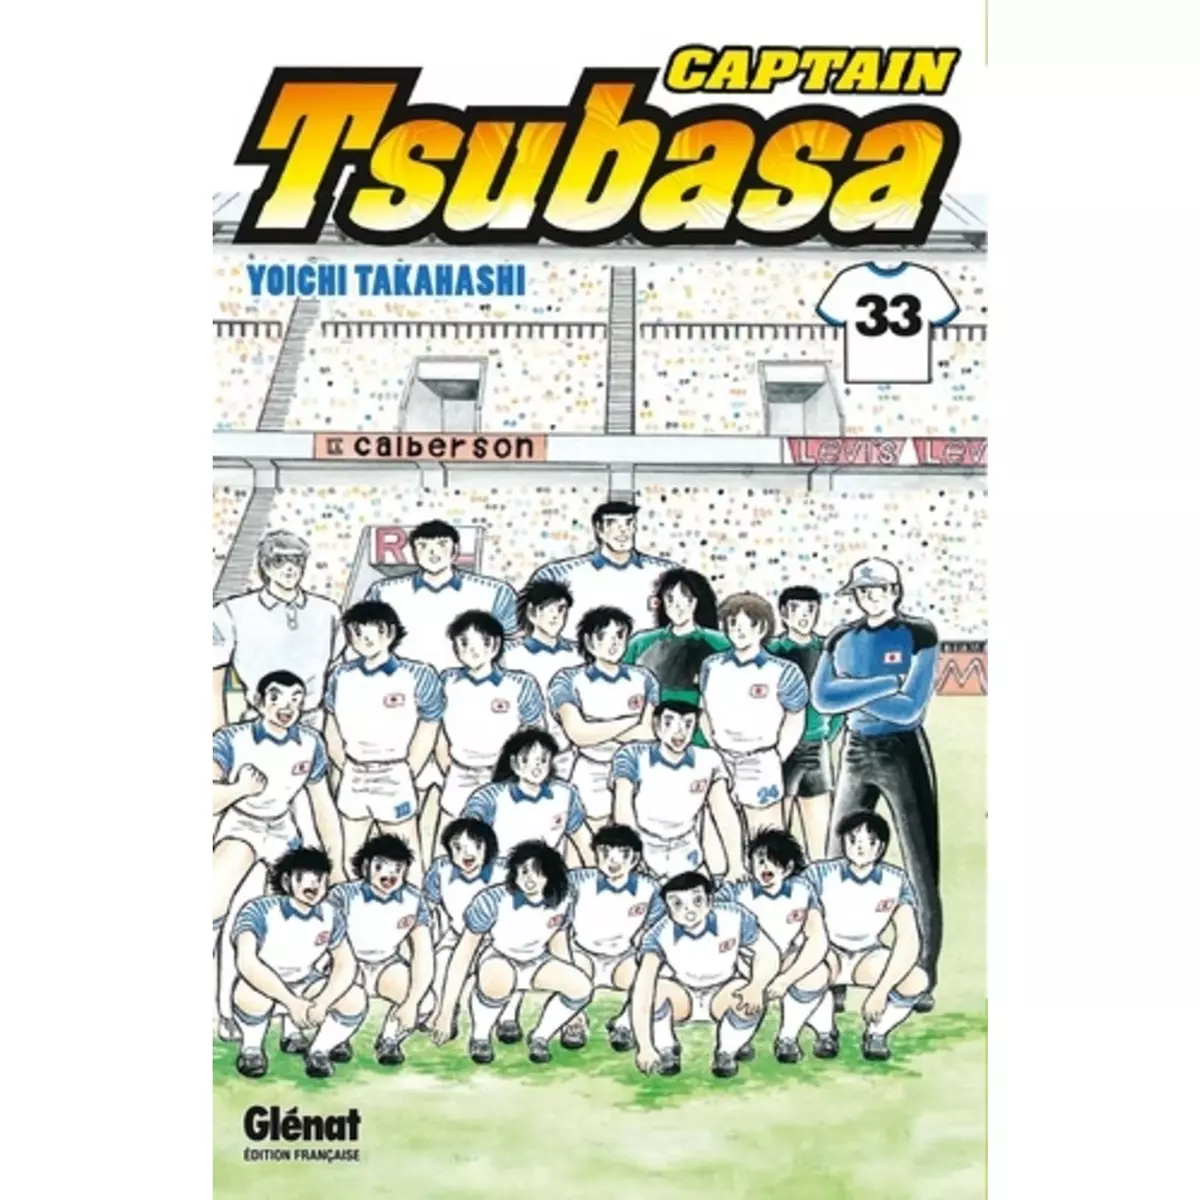  CAPTAIN TSUBASA TOME 33, Takahashi Yoichi